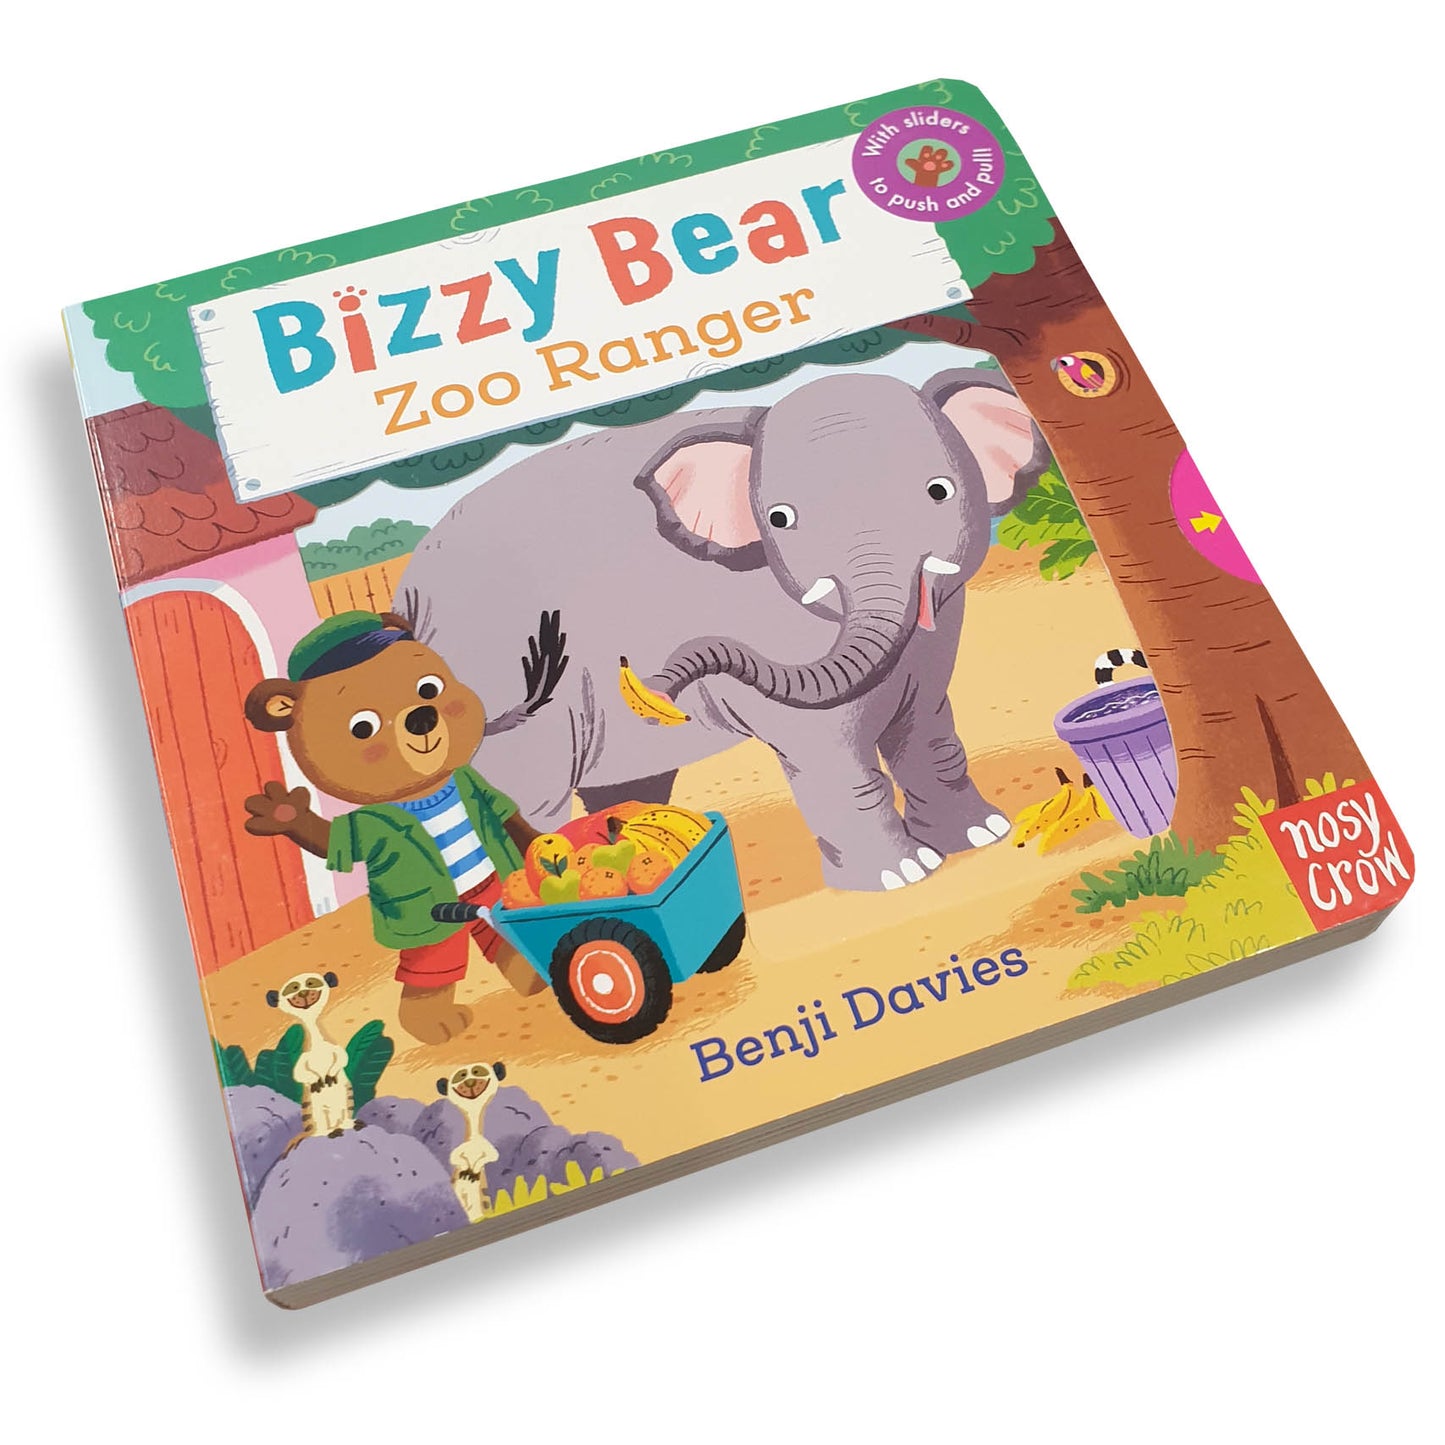 Bizzy Bear Zoo Ranger - Deb's Hidden Treasures